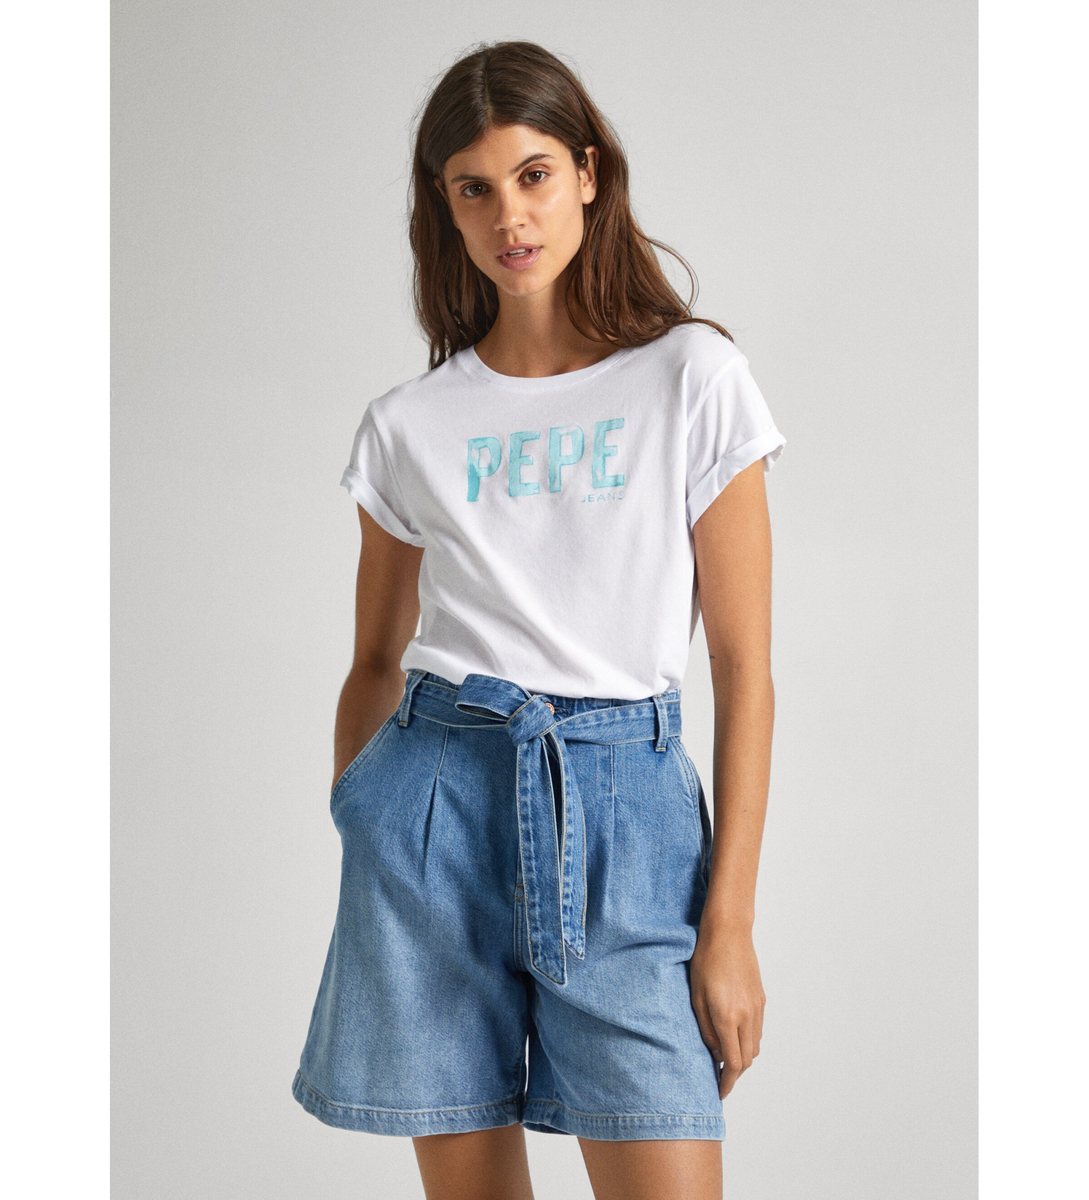 Pepe Jeans dámské bílé tričko JANET s potiskem - XS (800)